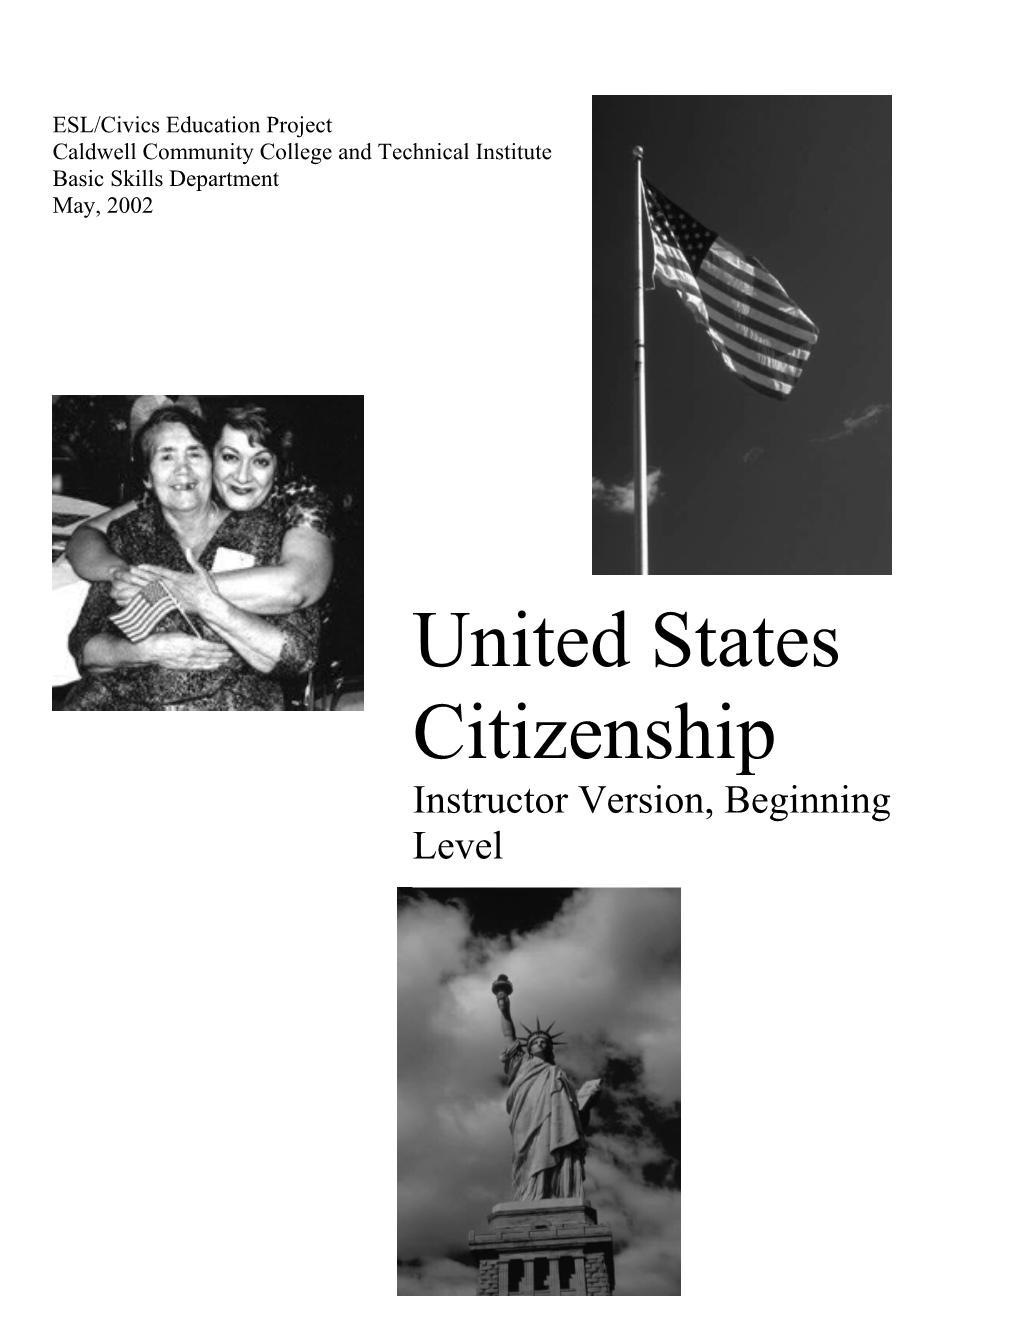 Citizenship Manual